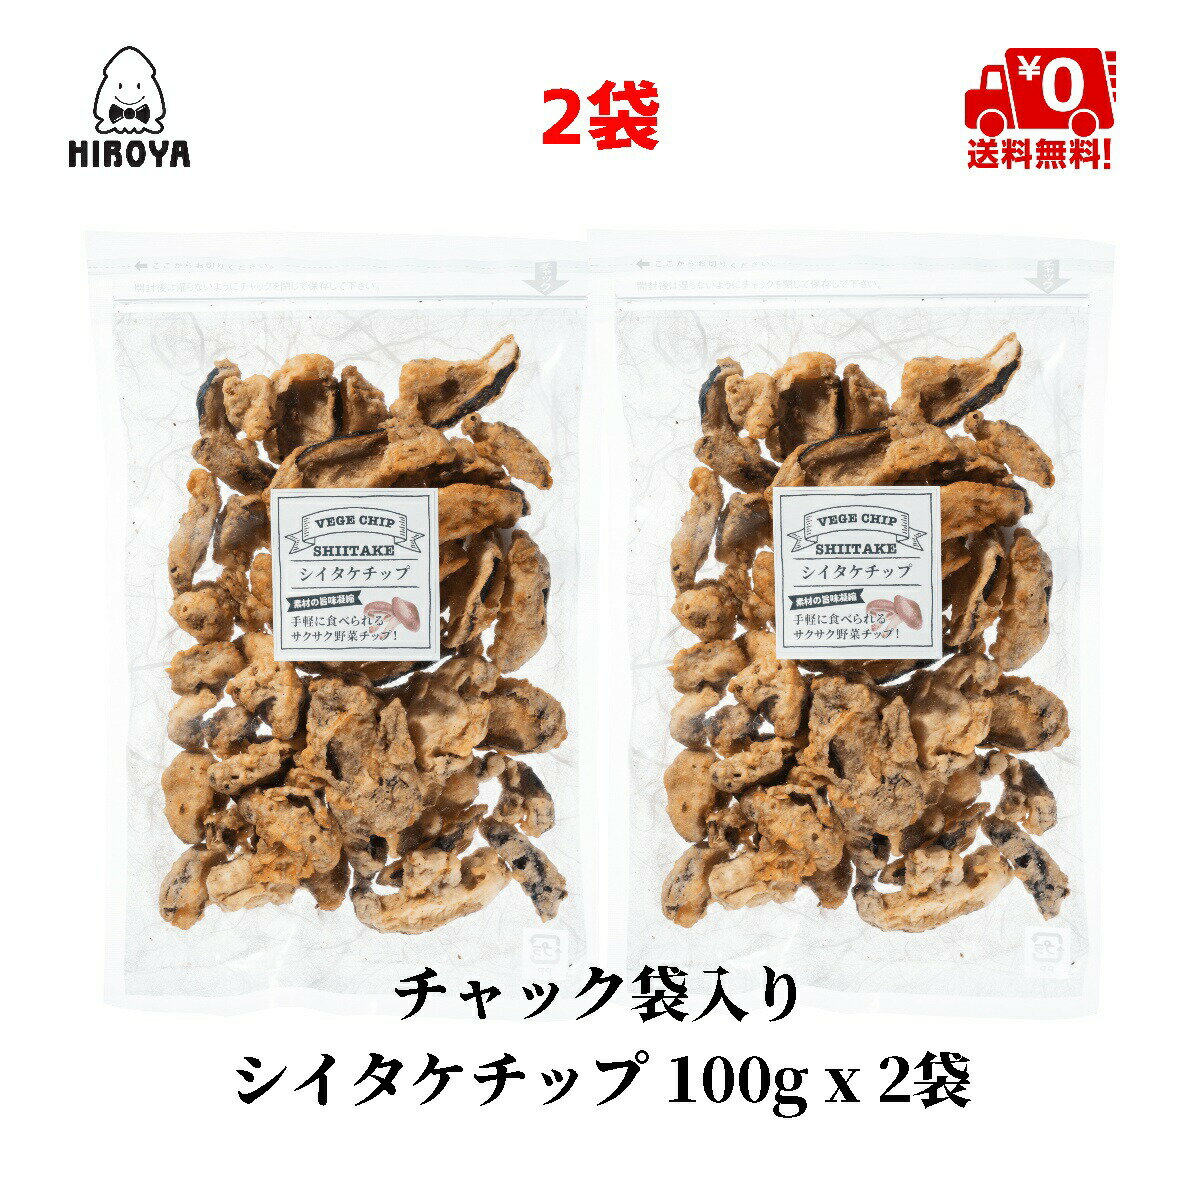 洋芋片 香菇洋芋片 100g x 2包 夾鏈袋裝 野菜 椎茸 食物纖維 日本必買 | 日本樂天熱銷